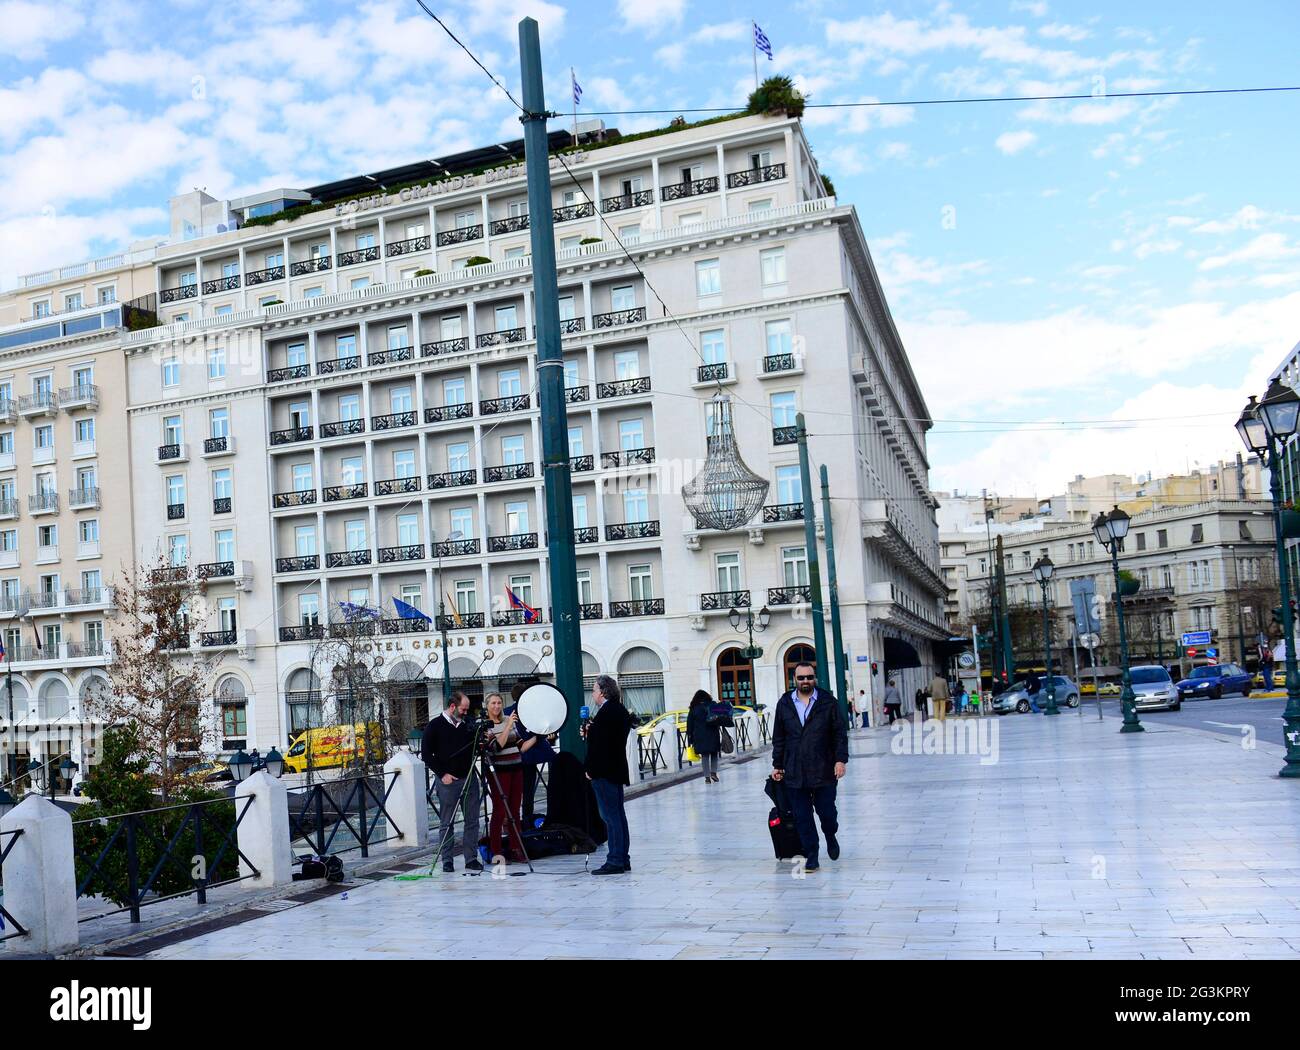 26 janv. 2015 - France24 journaliste et équipe de reportage de la place Syntagma pendant les crises politiques en Grèce. Banque D'Images